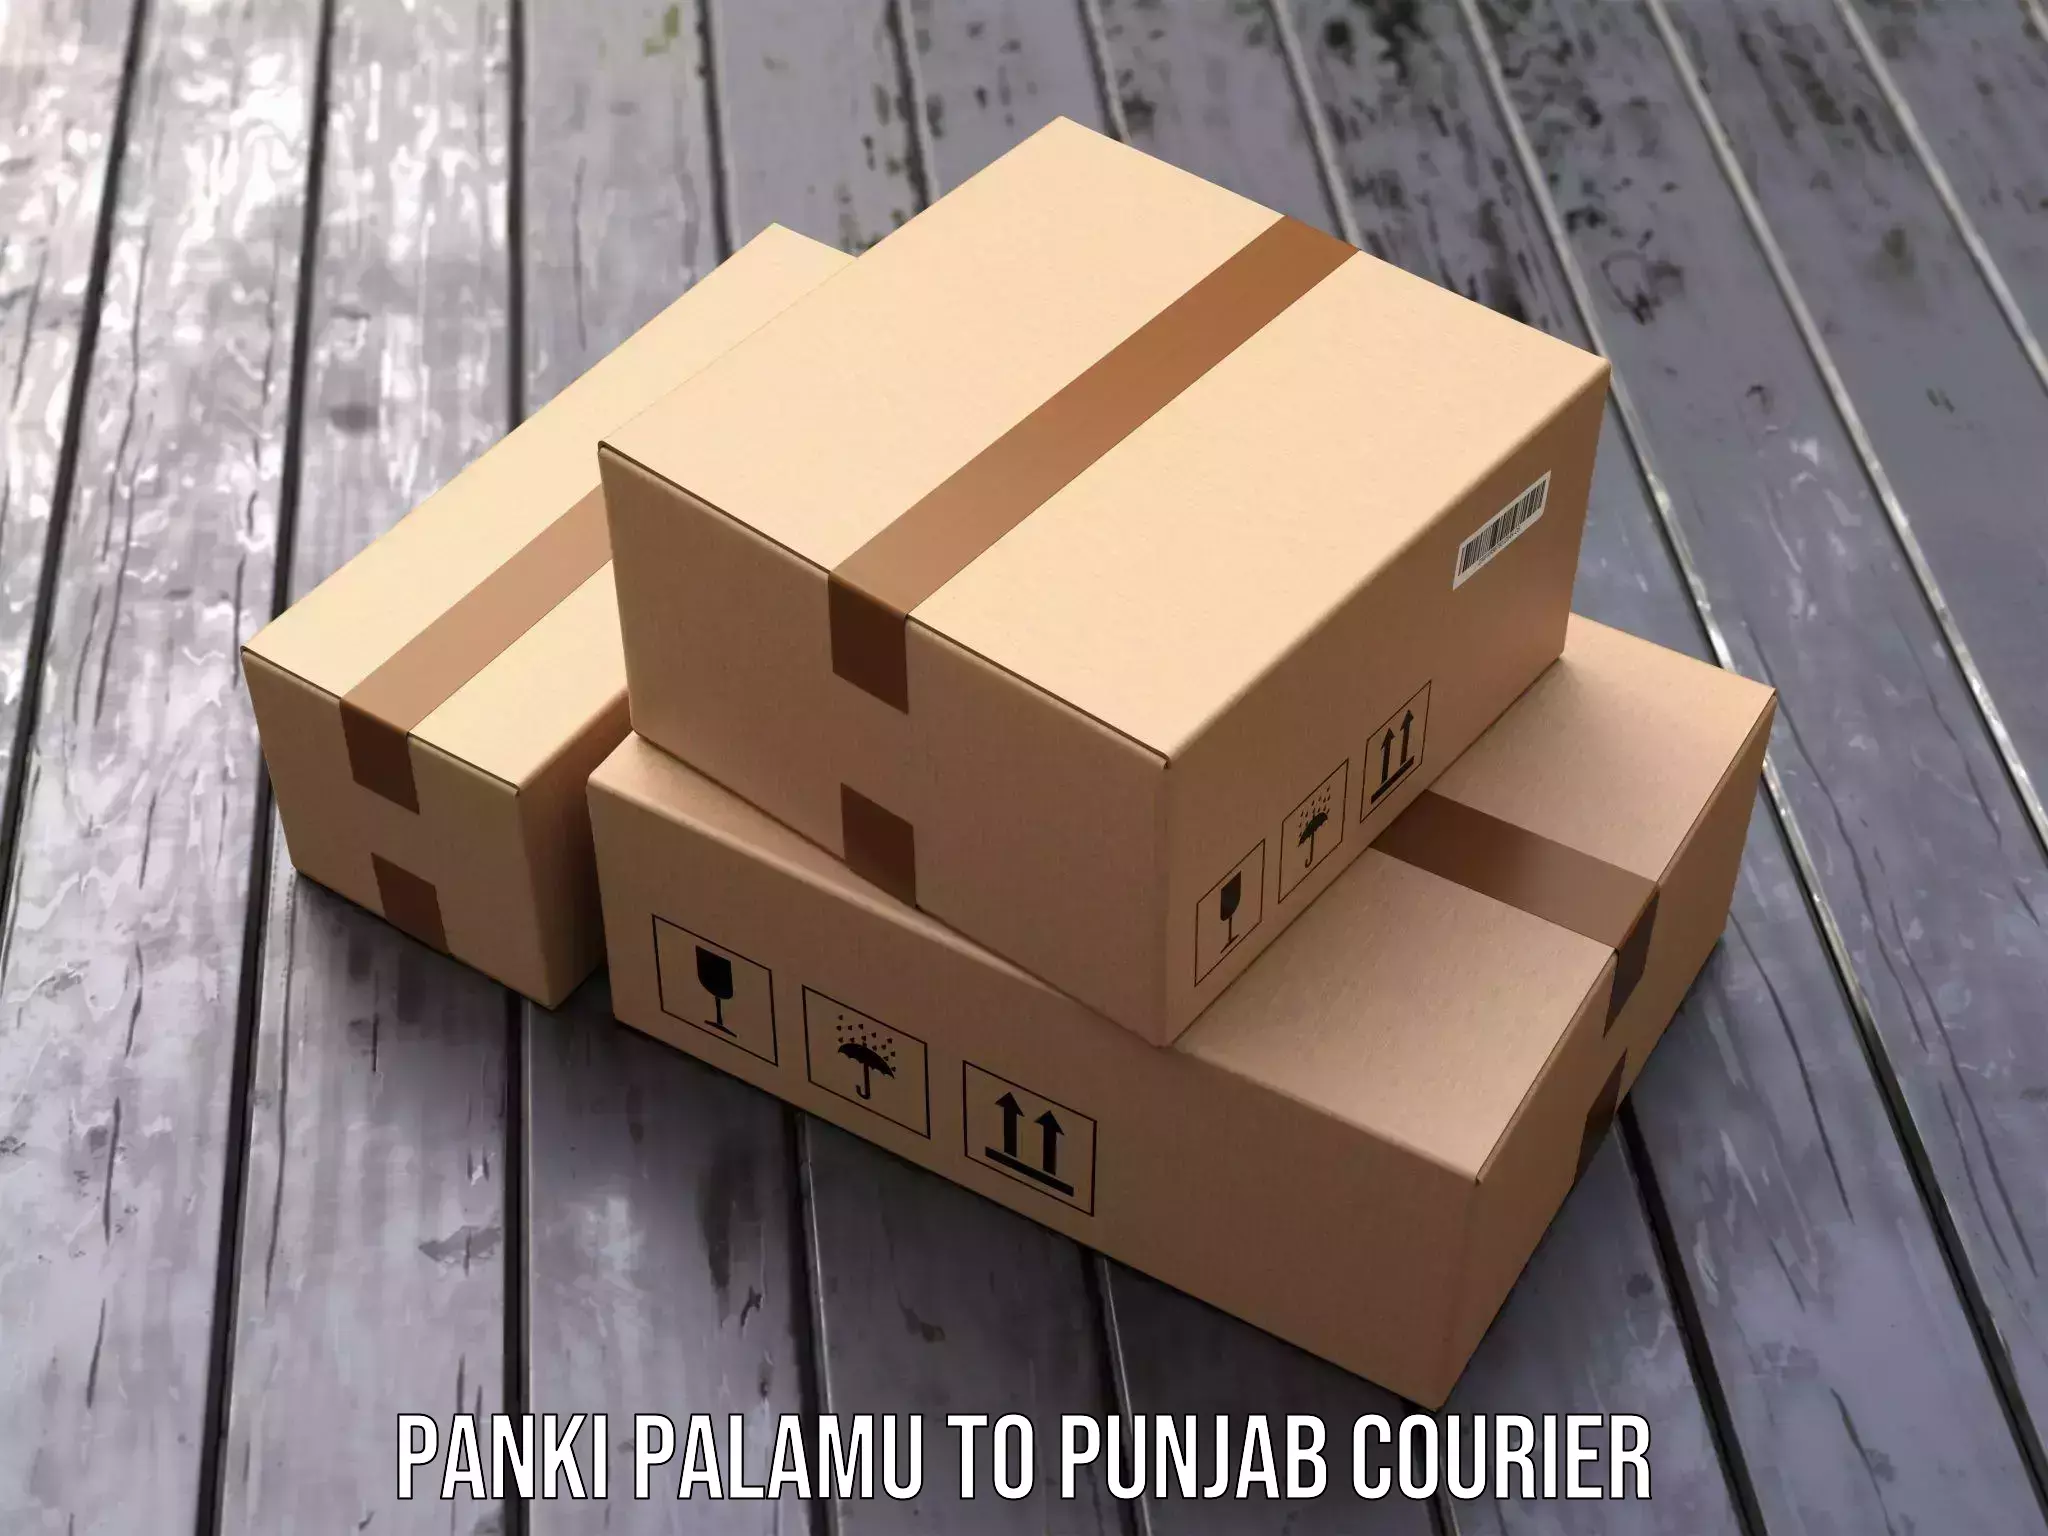 Advanced delivery network Panki Palamu to Patiala